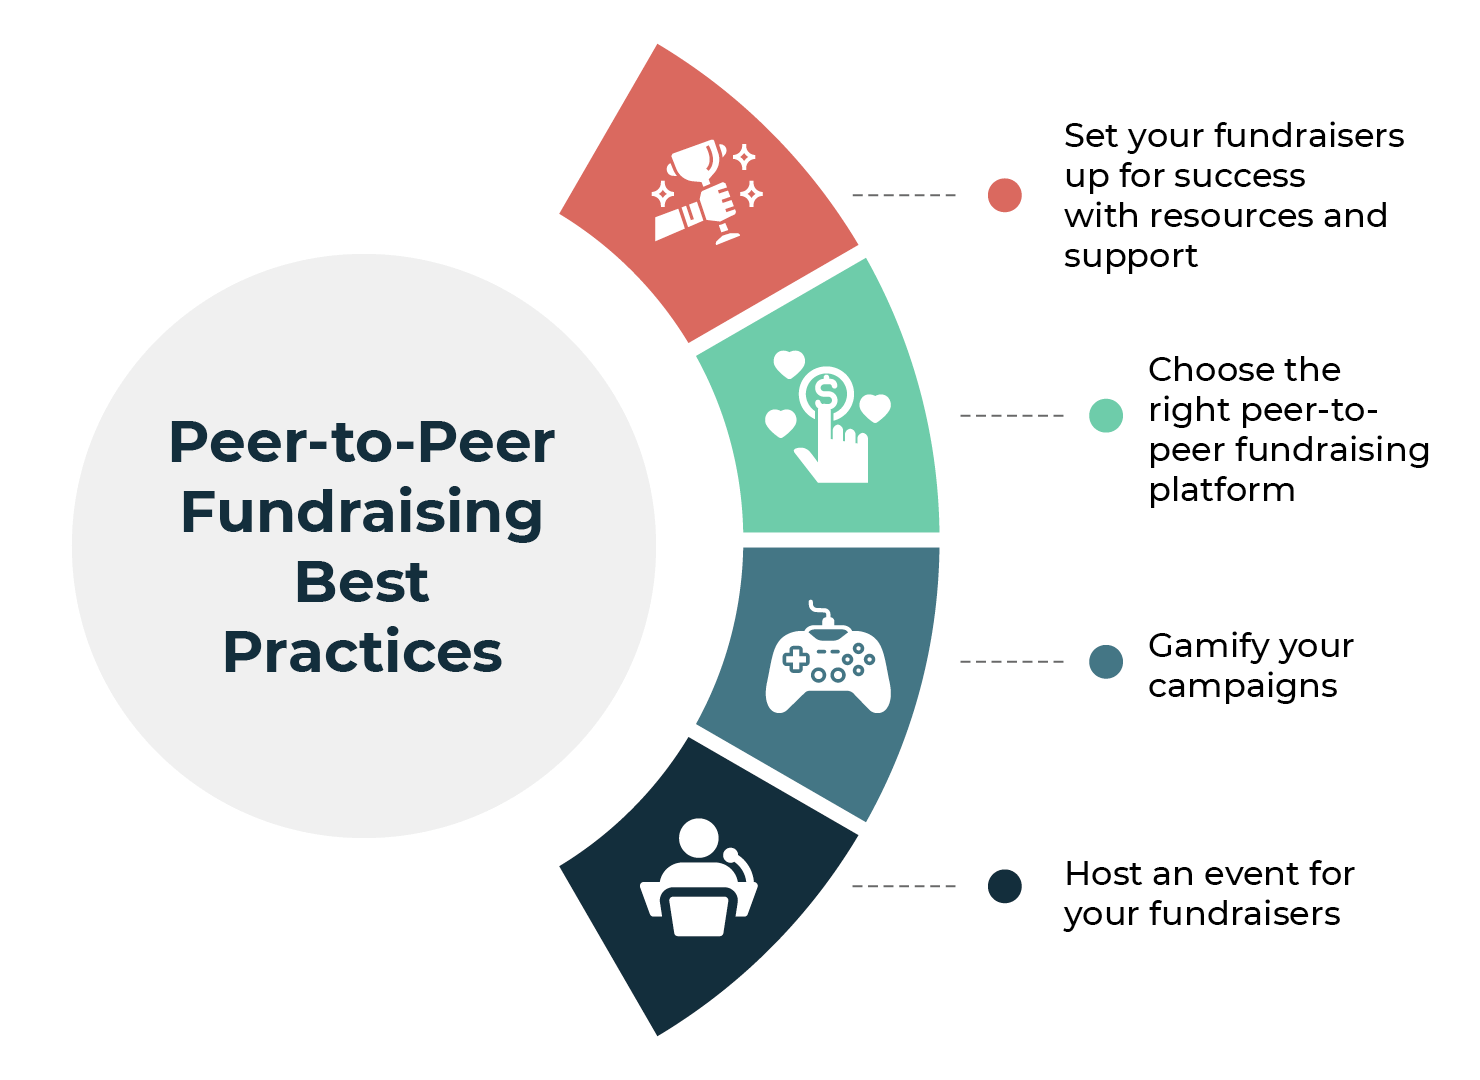 Peer-to-peer fundraising best practices (listed below)